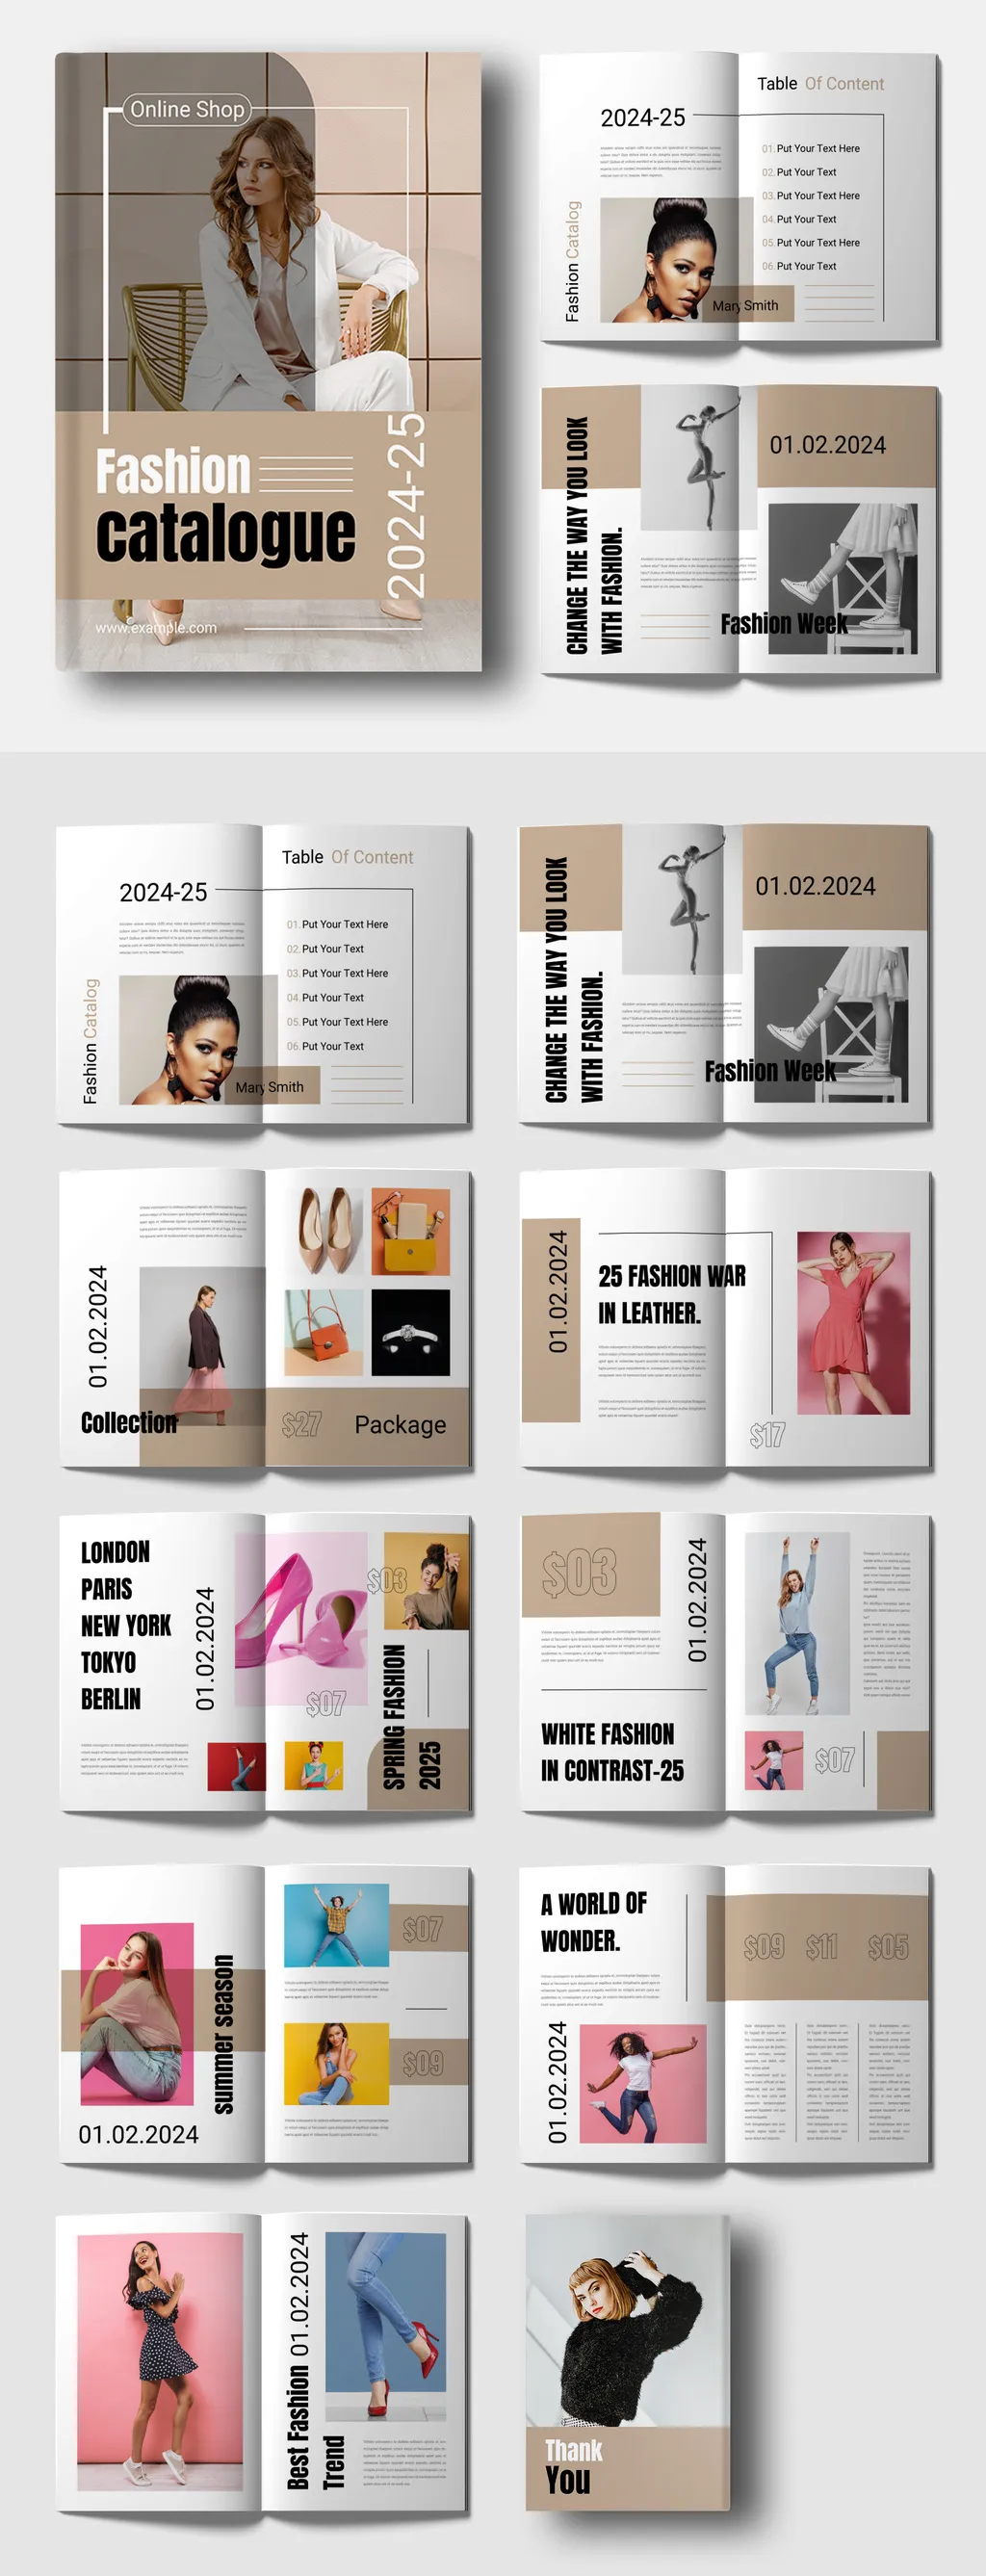 Adobestock - Fashion Catalog Magazine Layout 714967691